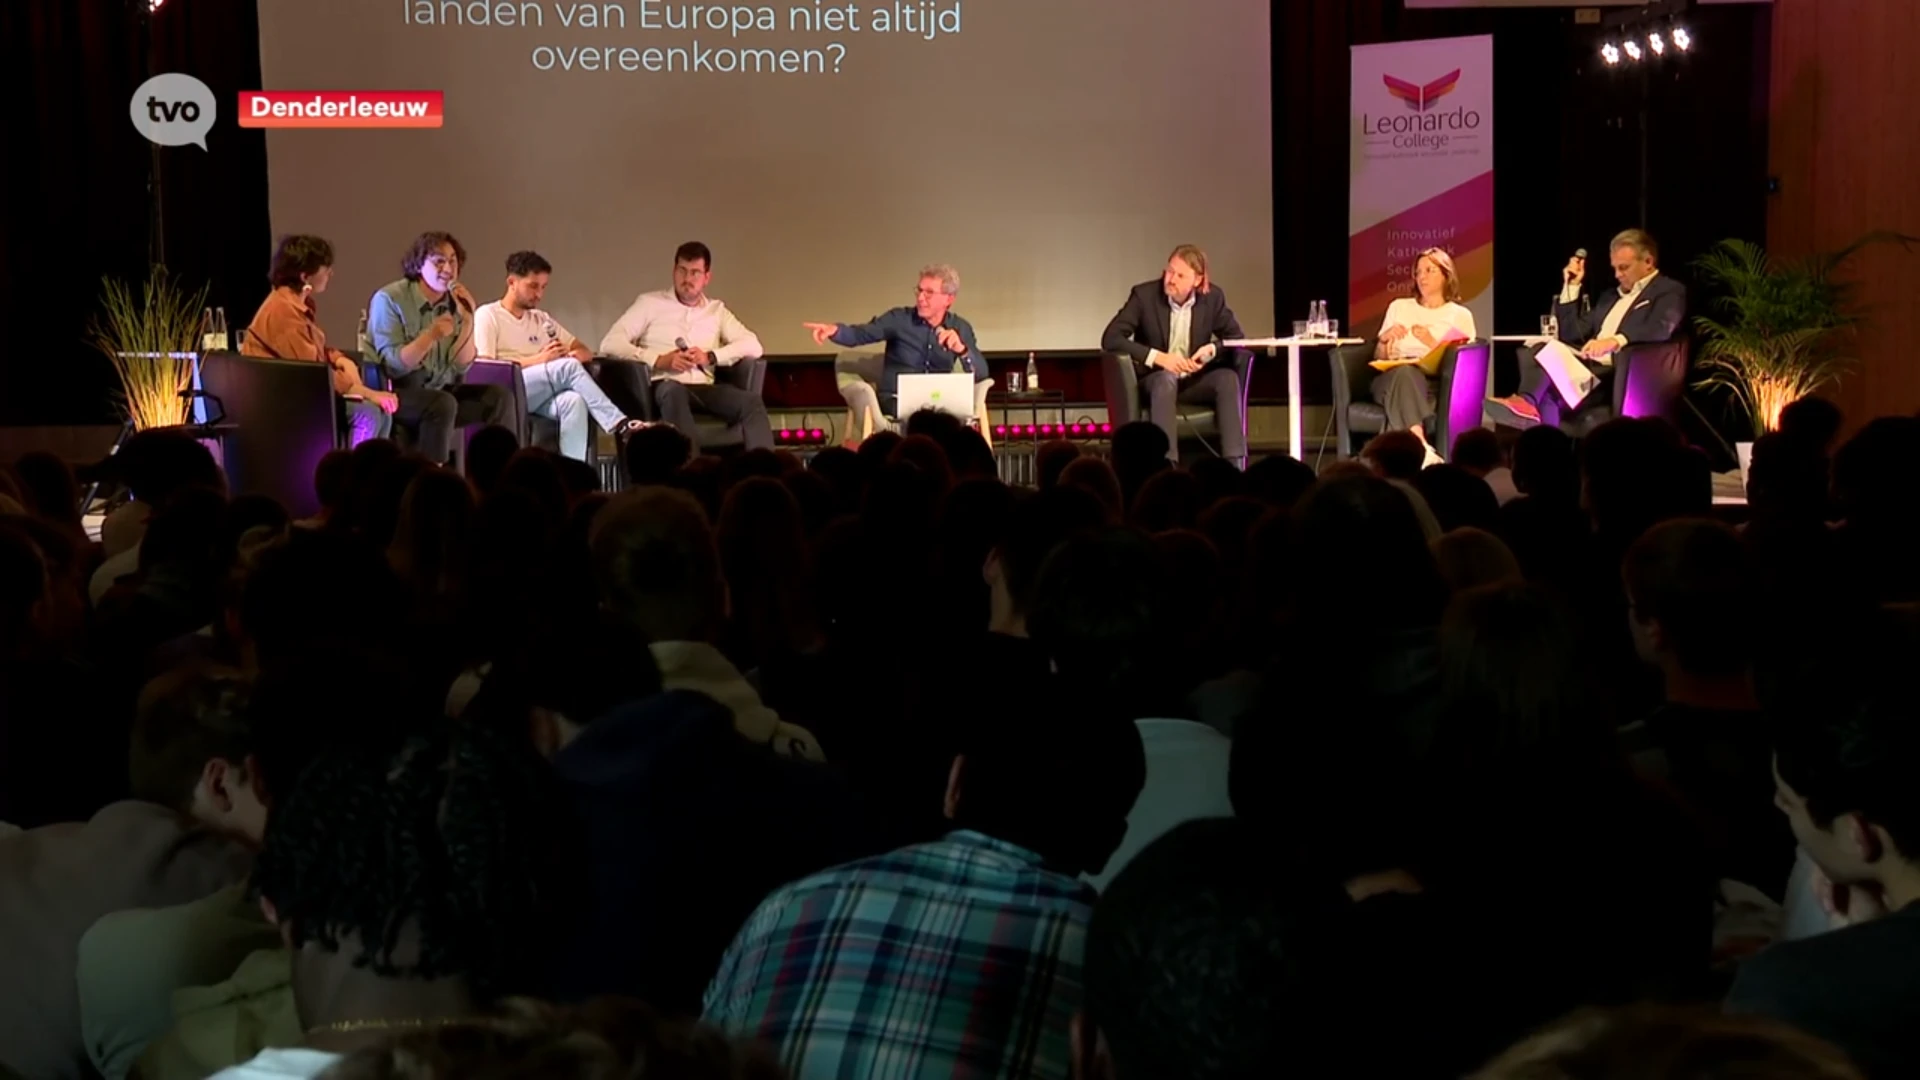 Politiek debat op college in Denderleeuw: "De democratie staat nu toch wel wat onder druk"